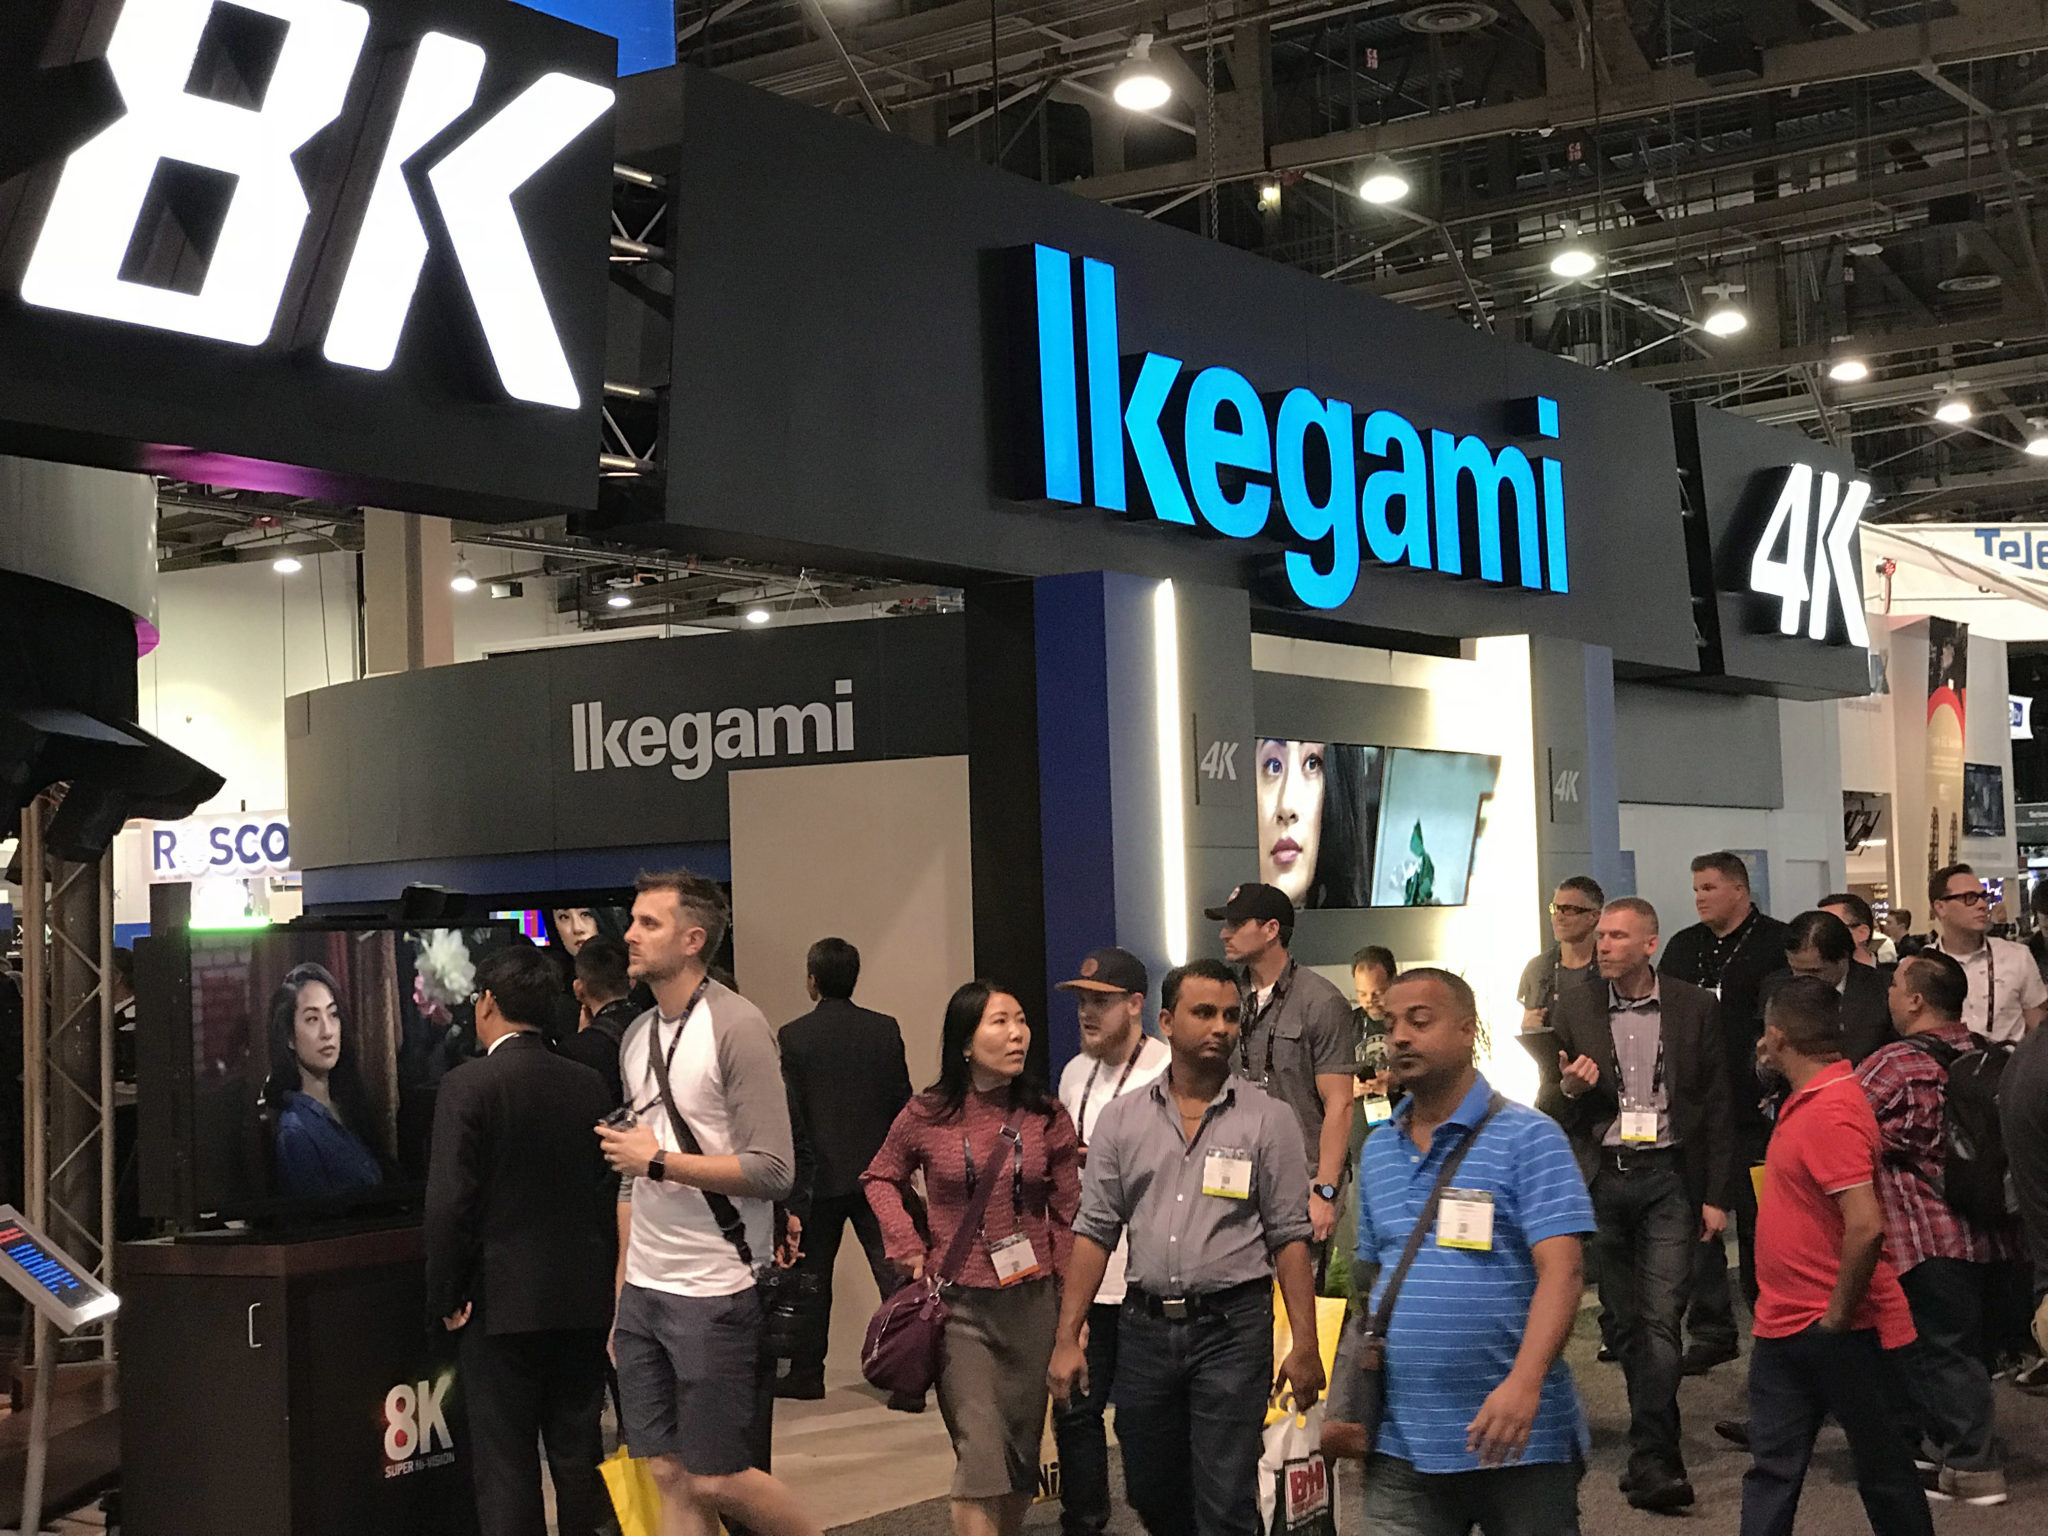 Ikegami 4K and 8K signage at NAB 2018